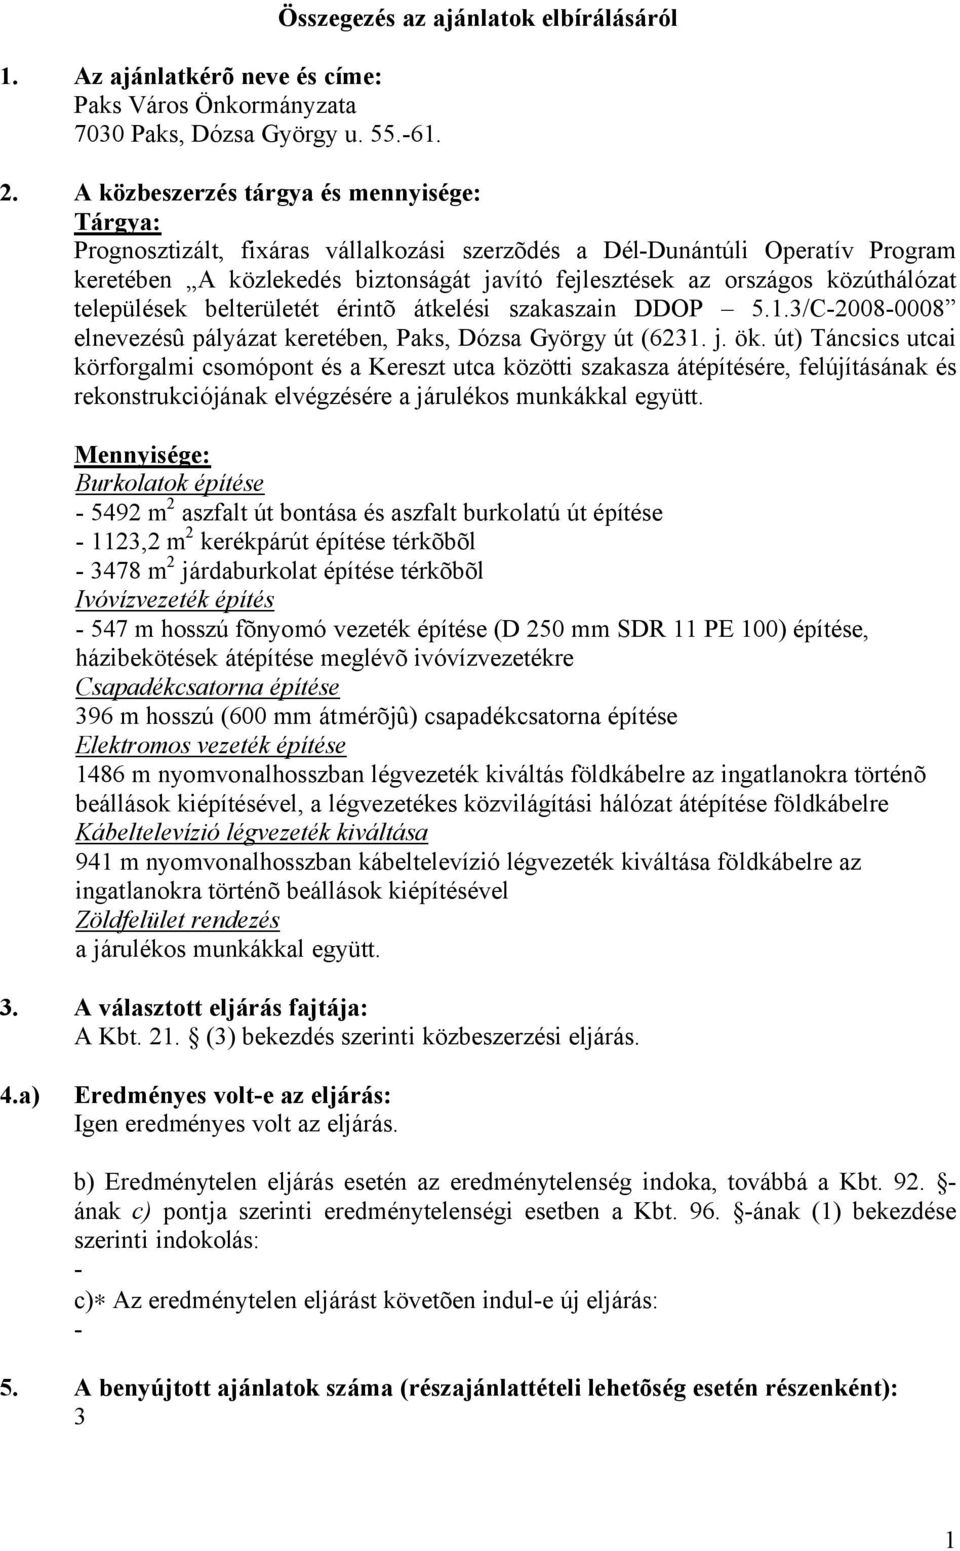 közúthálózat települések belterületét érintõ átkelési szakaszain DDOP 5.1.3/C-2008-0008 elnevezésû pályázat keretében, Paks, Dózsa György út (6231. j. ök.